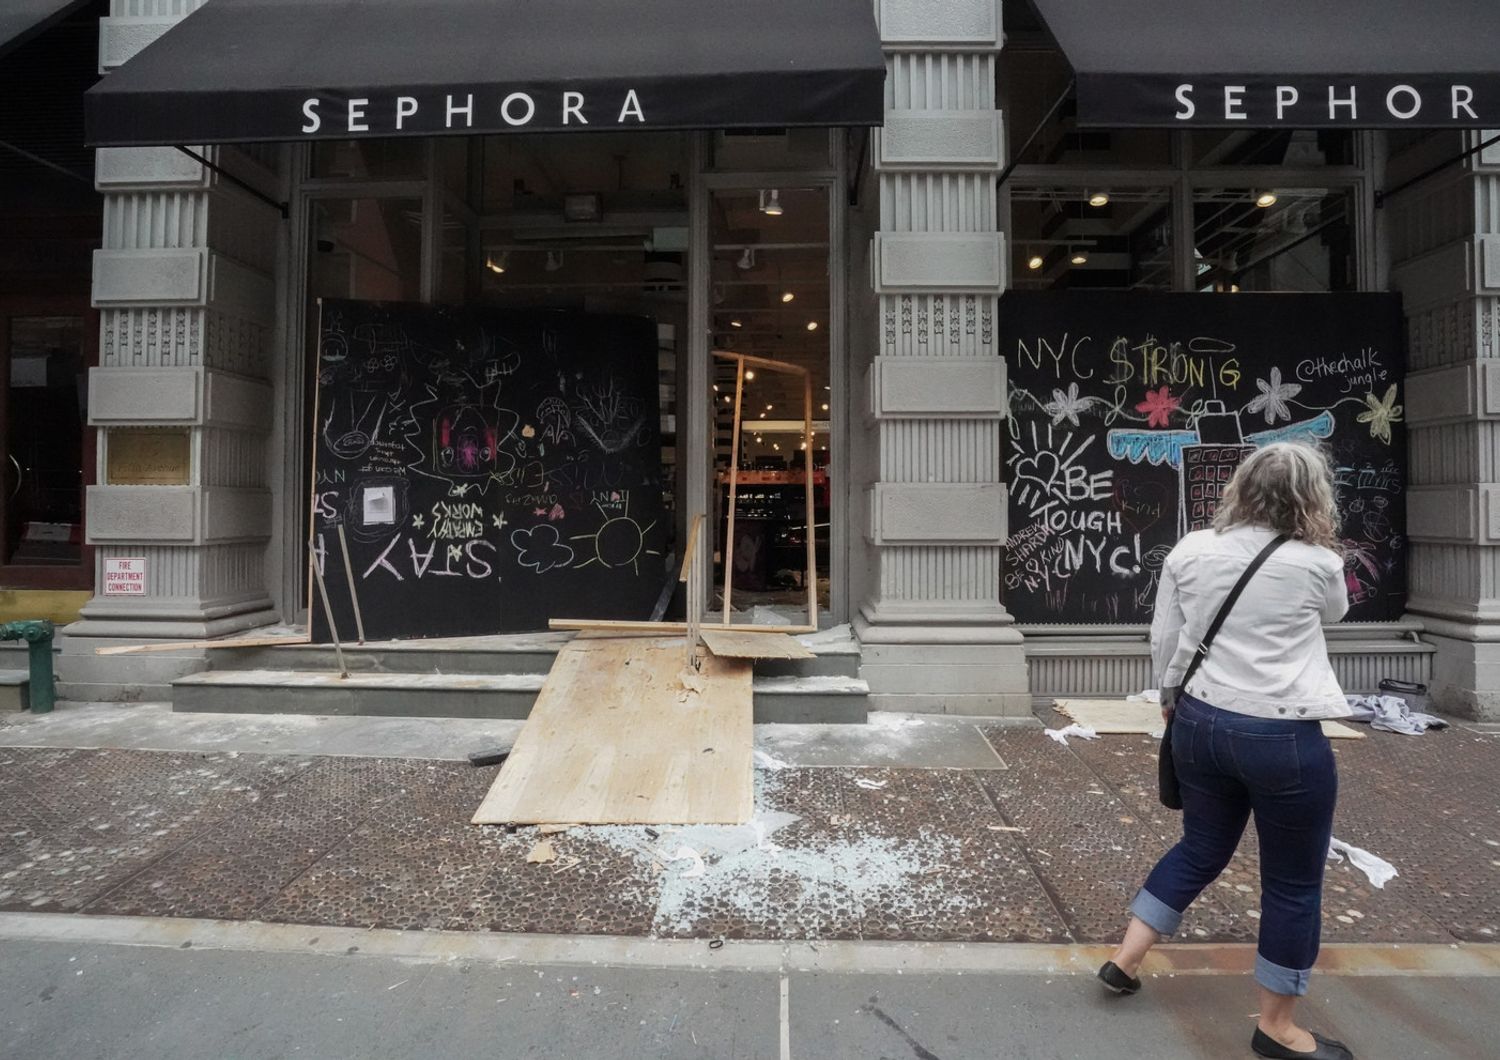 Un negozio Sephora vandalizzato a New York durante le proteste antirazziste